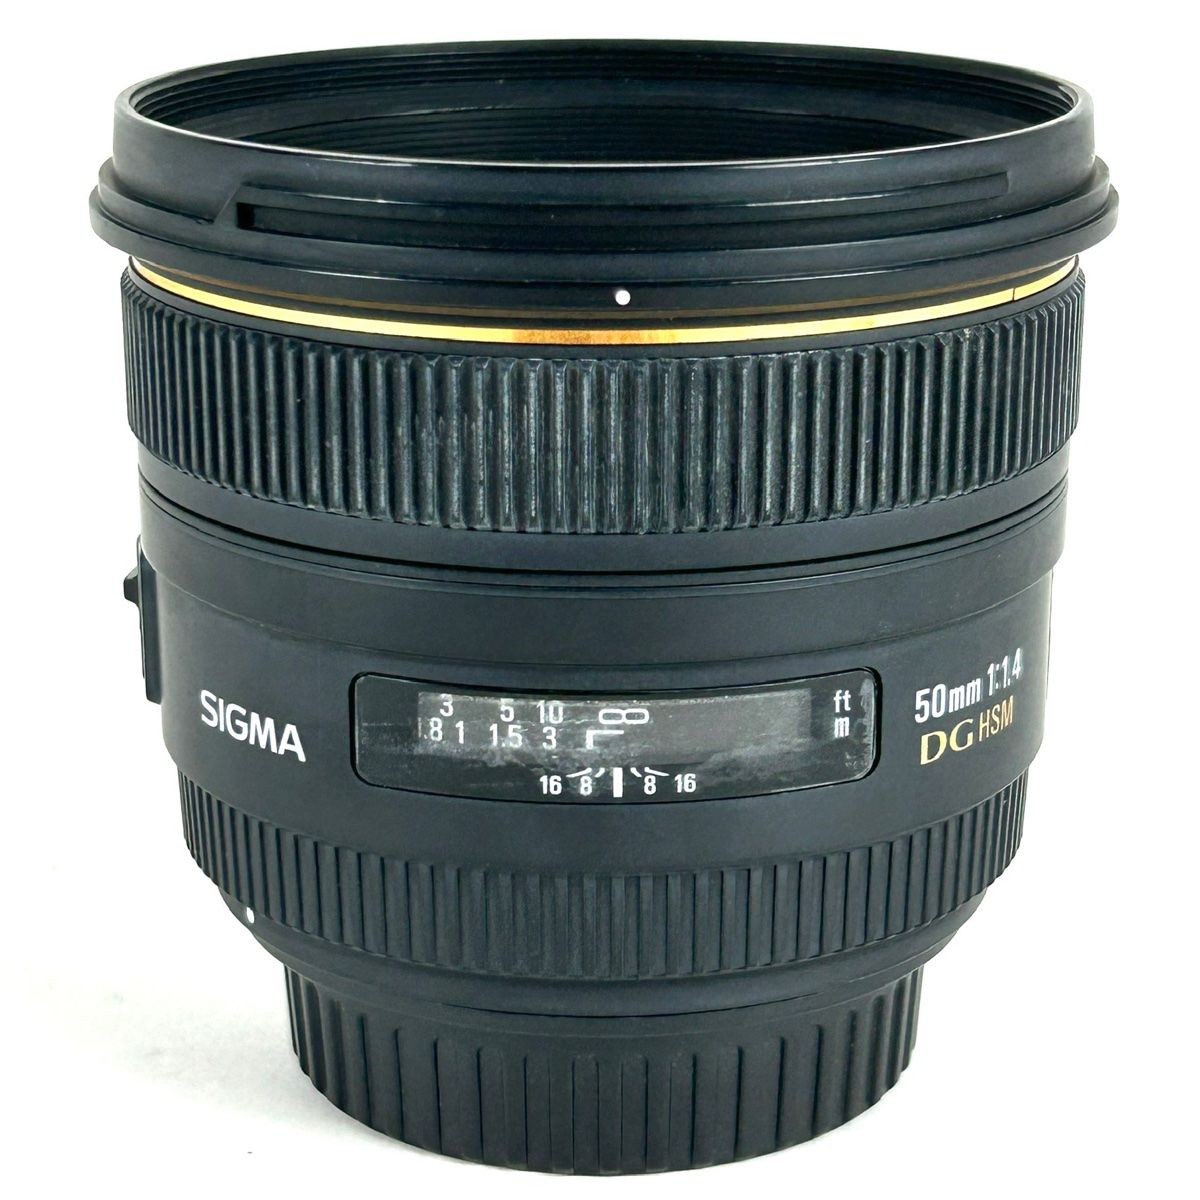 シグマ SIGMA 50mm F1.4 EX DG HSM (キヤノン EF用) 一眼カメラ用